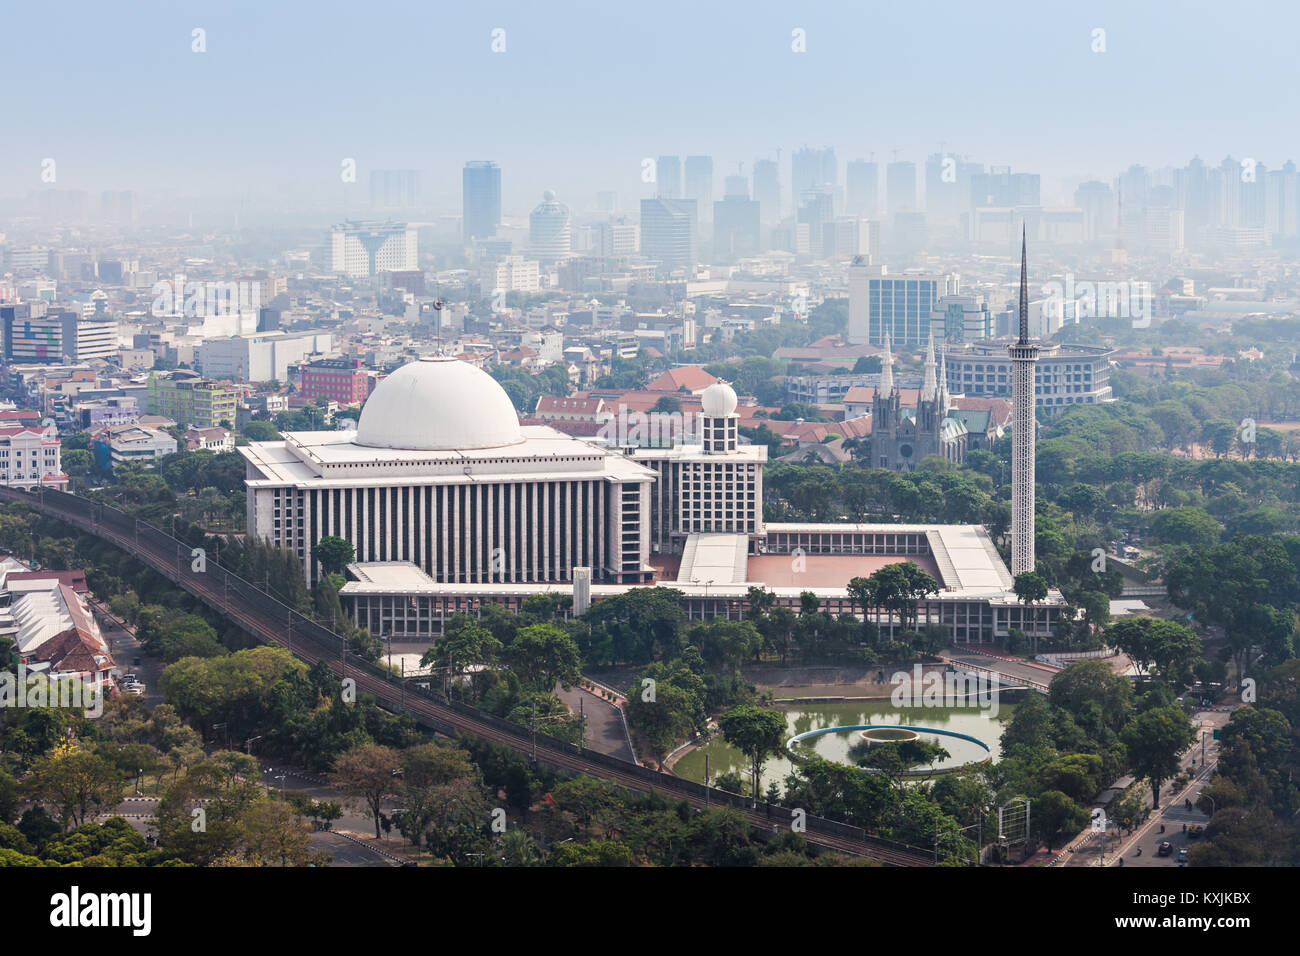 JAKARTA, Indonesia - 21 ottobre 2014: Veduta aerea della Moschea Istiqlal. Si tratta della più grande moschea del Sud-est asiatico. Foto Stock